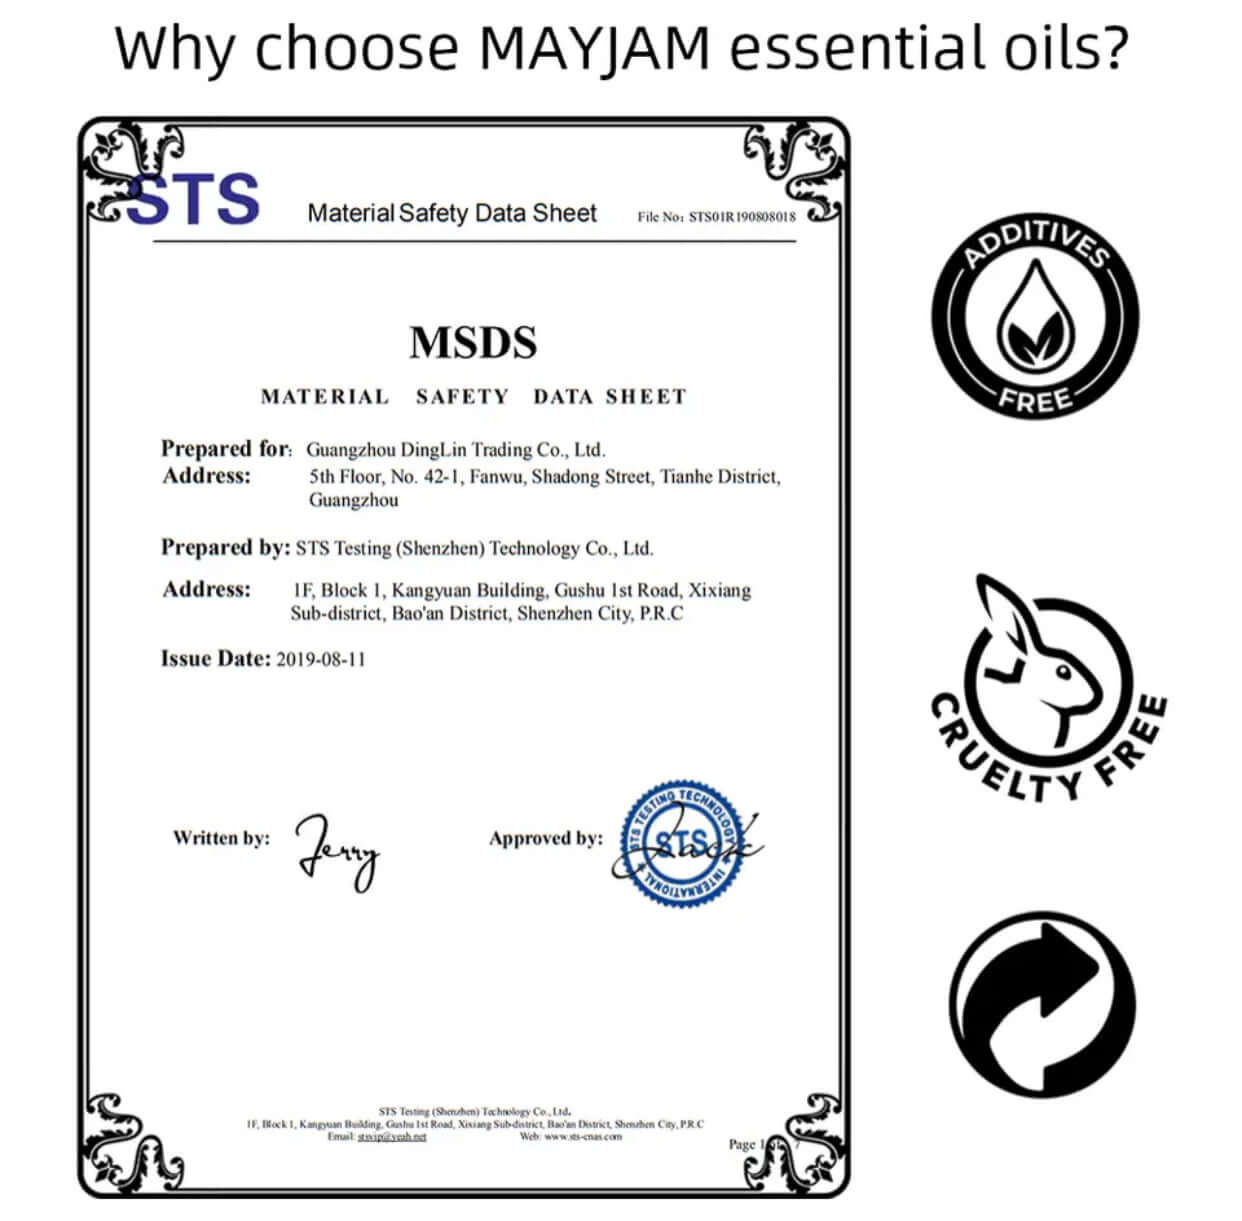 Coffret d'huiles essentielles MAYJAM - 35 bouteilles en coffret cadeau - pour humidificateurs, diffuseurs, parfum DIY et bien plus encore